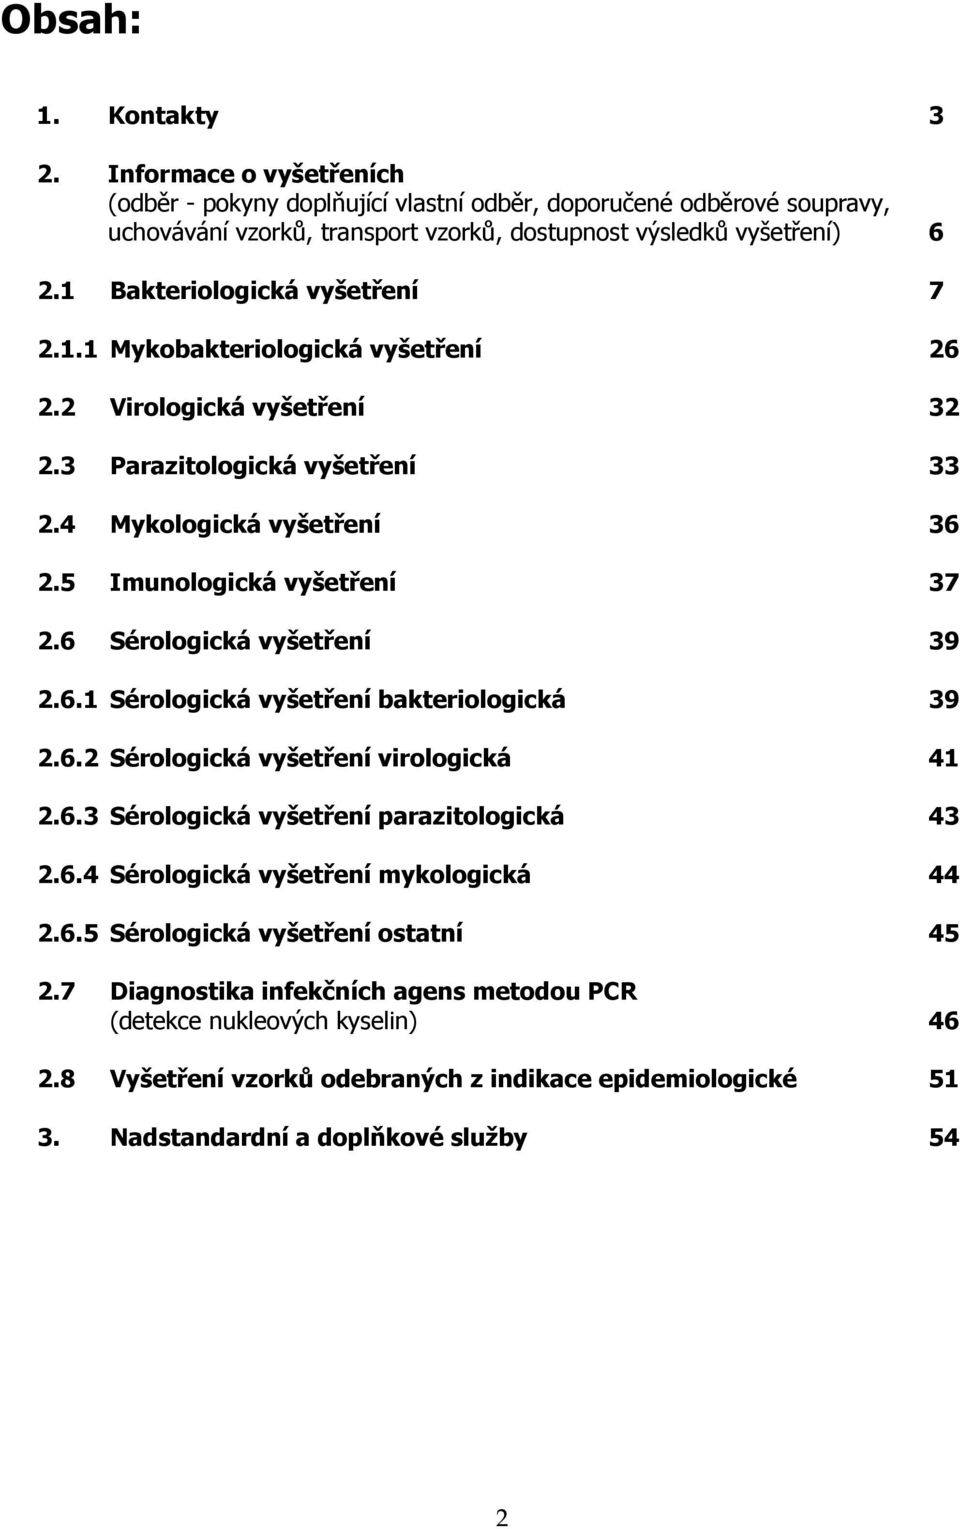 6 Sérologická vyšetření 39 2.6.1 Sérologická vyšetření bakteriologická 39 2.6.2 Sérologická vyšetření virologická 41 2.6.3 Sérologická vyšetření parazitologická 43 2.6.4 Sérologická vyšetření mykologická 44 2.